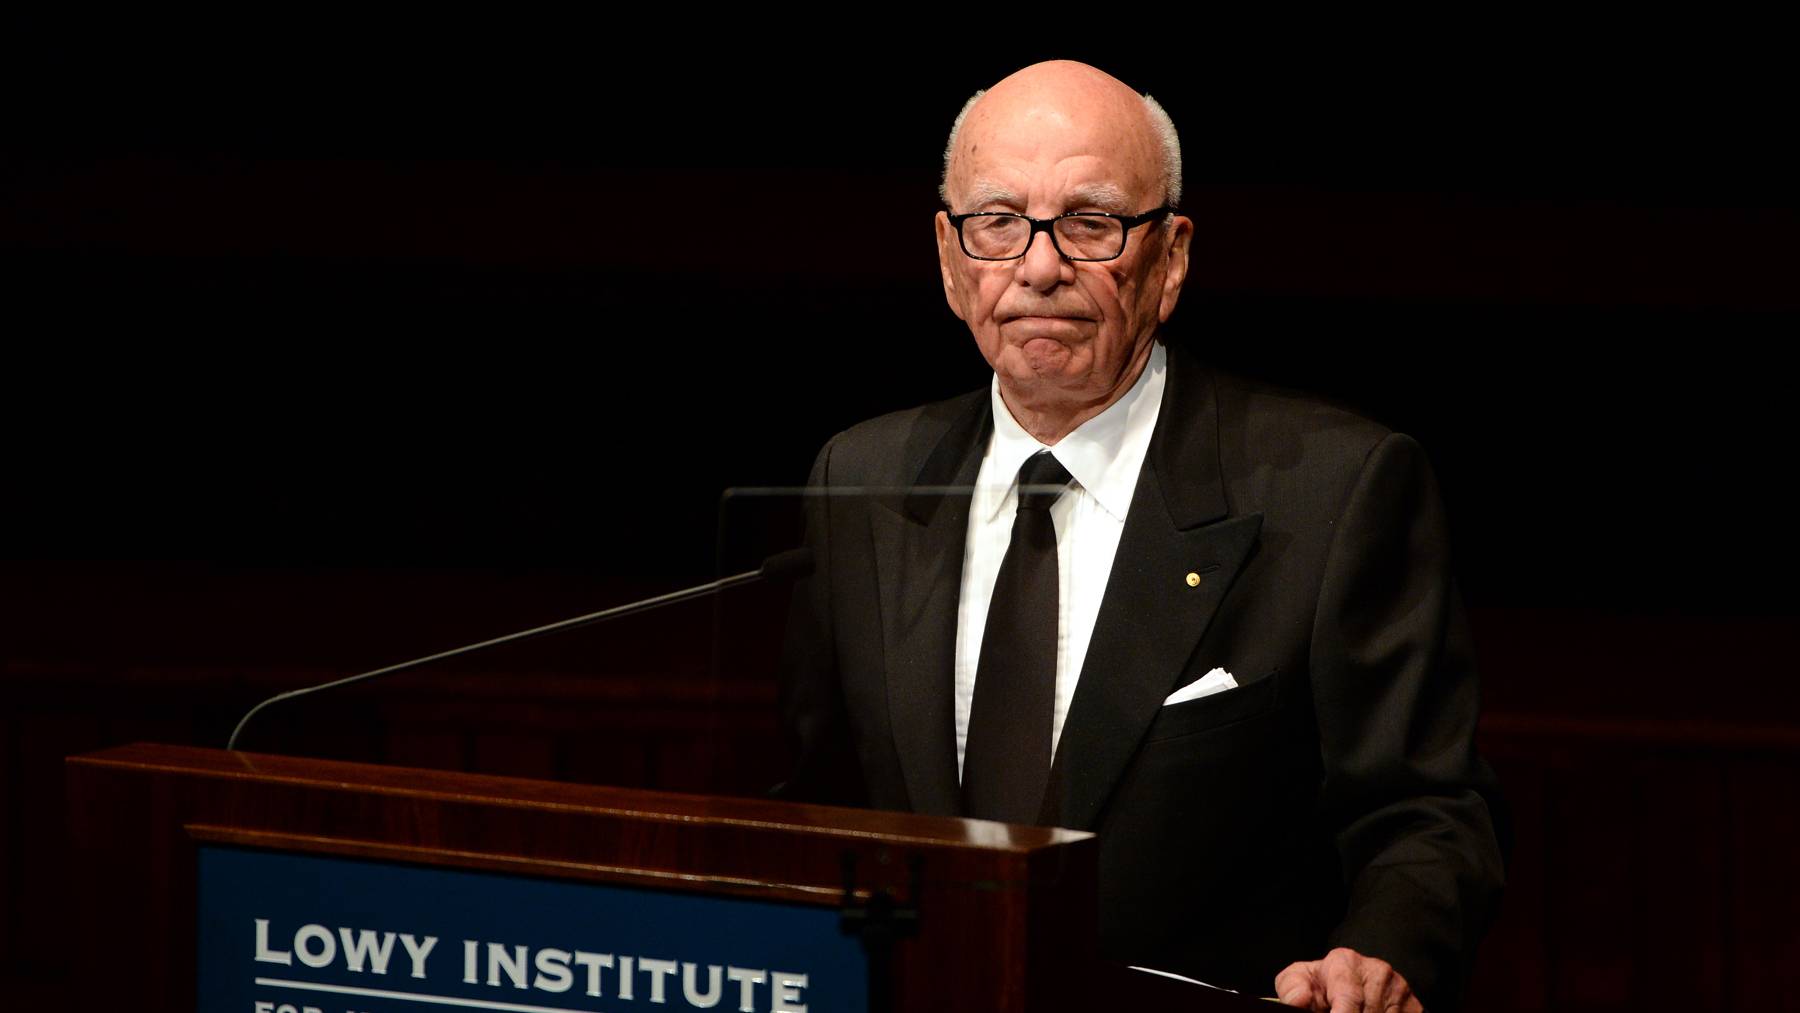 Rupert Murdoch ha anunciado este jueves que se retira como presidente del conglomerado mediático Fox y de News Corporation